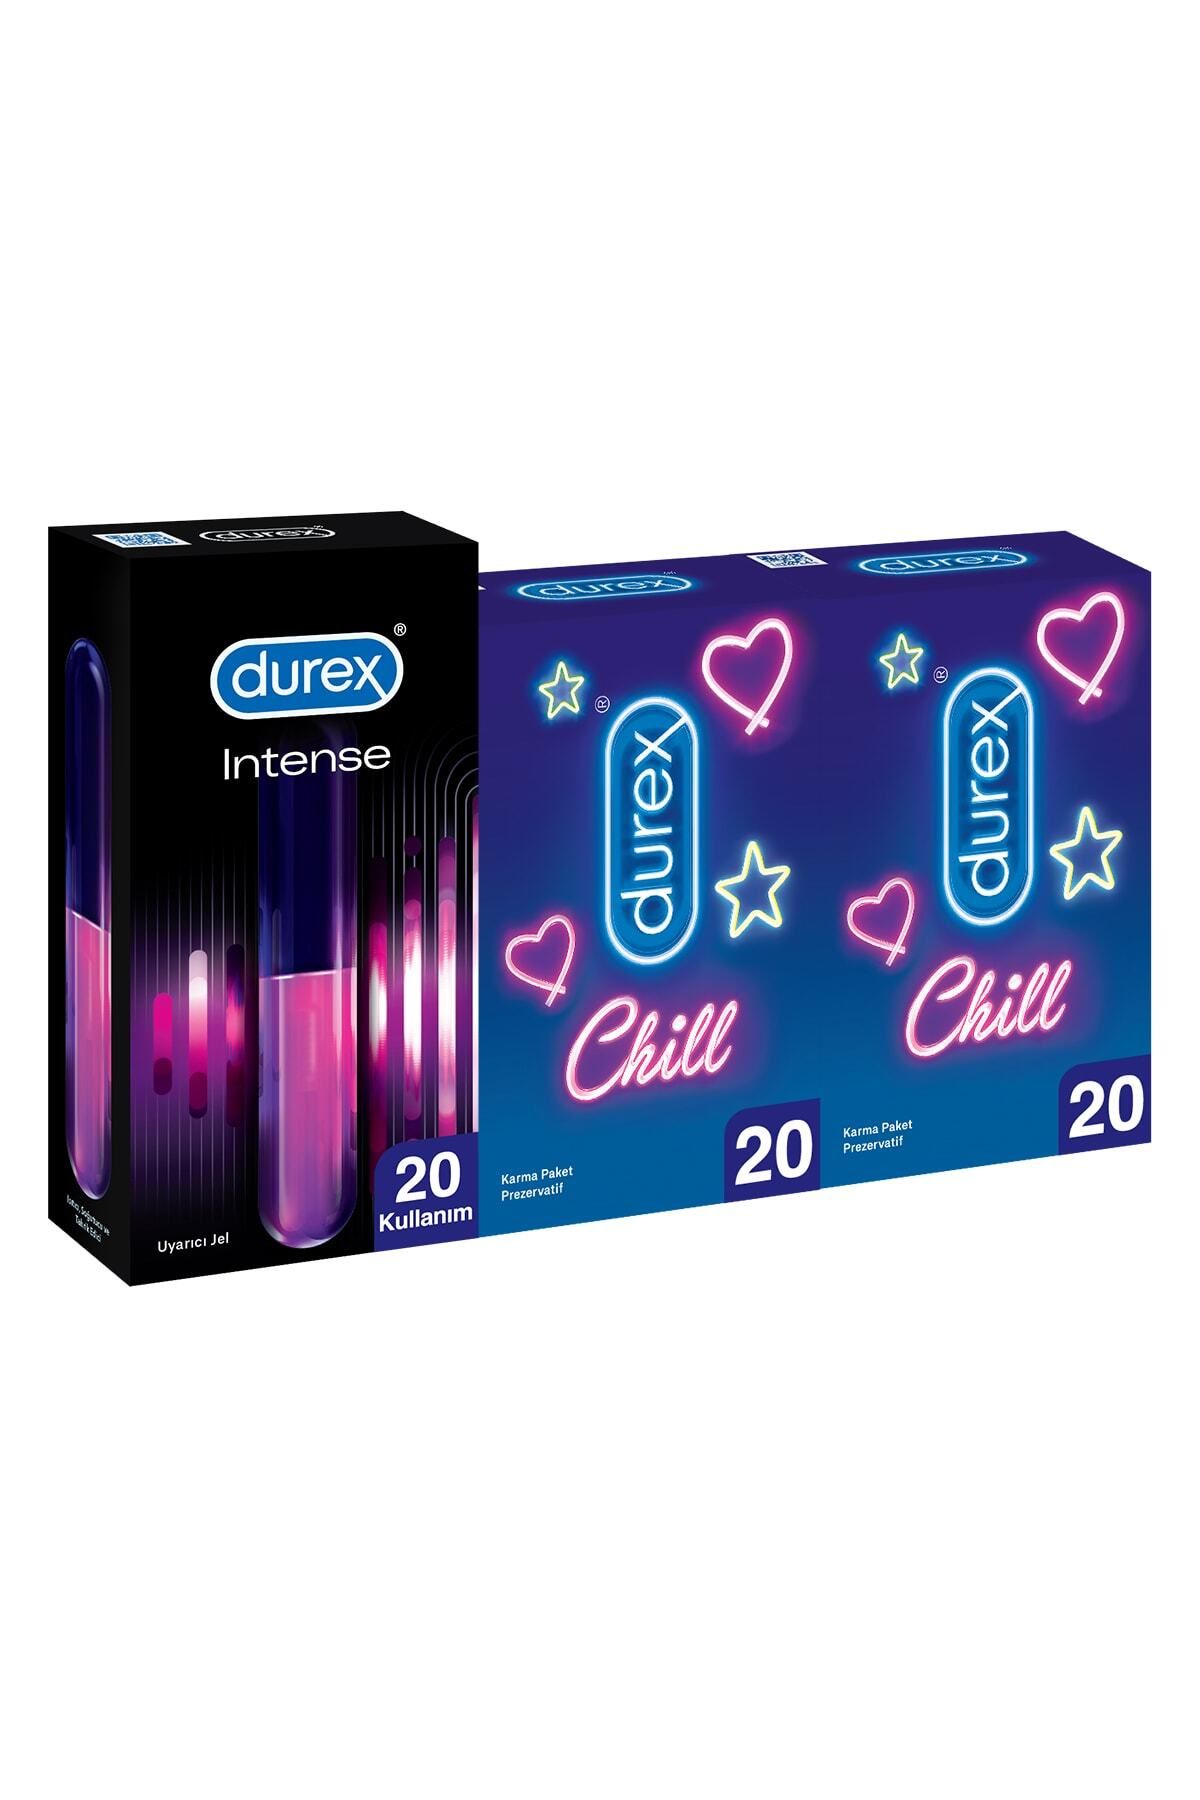 Durex Chill Karma Prezervatif Ekstra Avantaj Paketi 40’lı + Intense Uyarıcı Jel, 10 ml